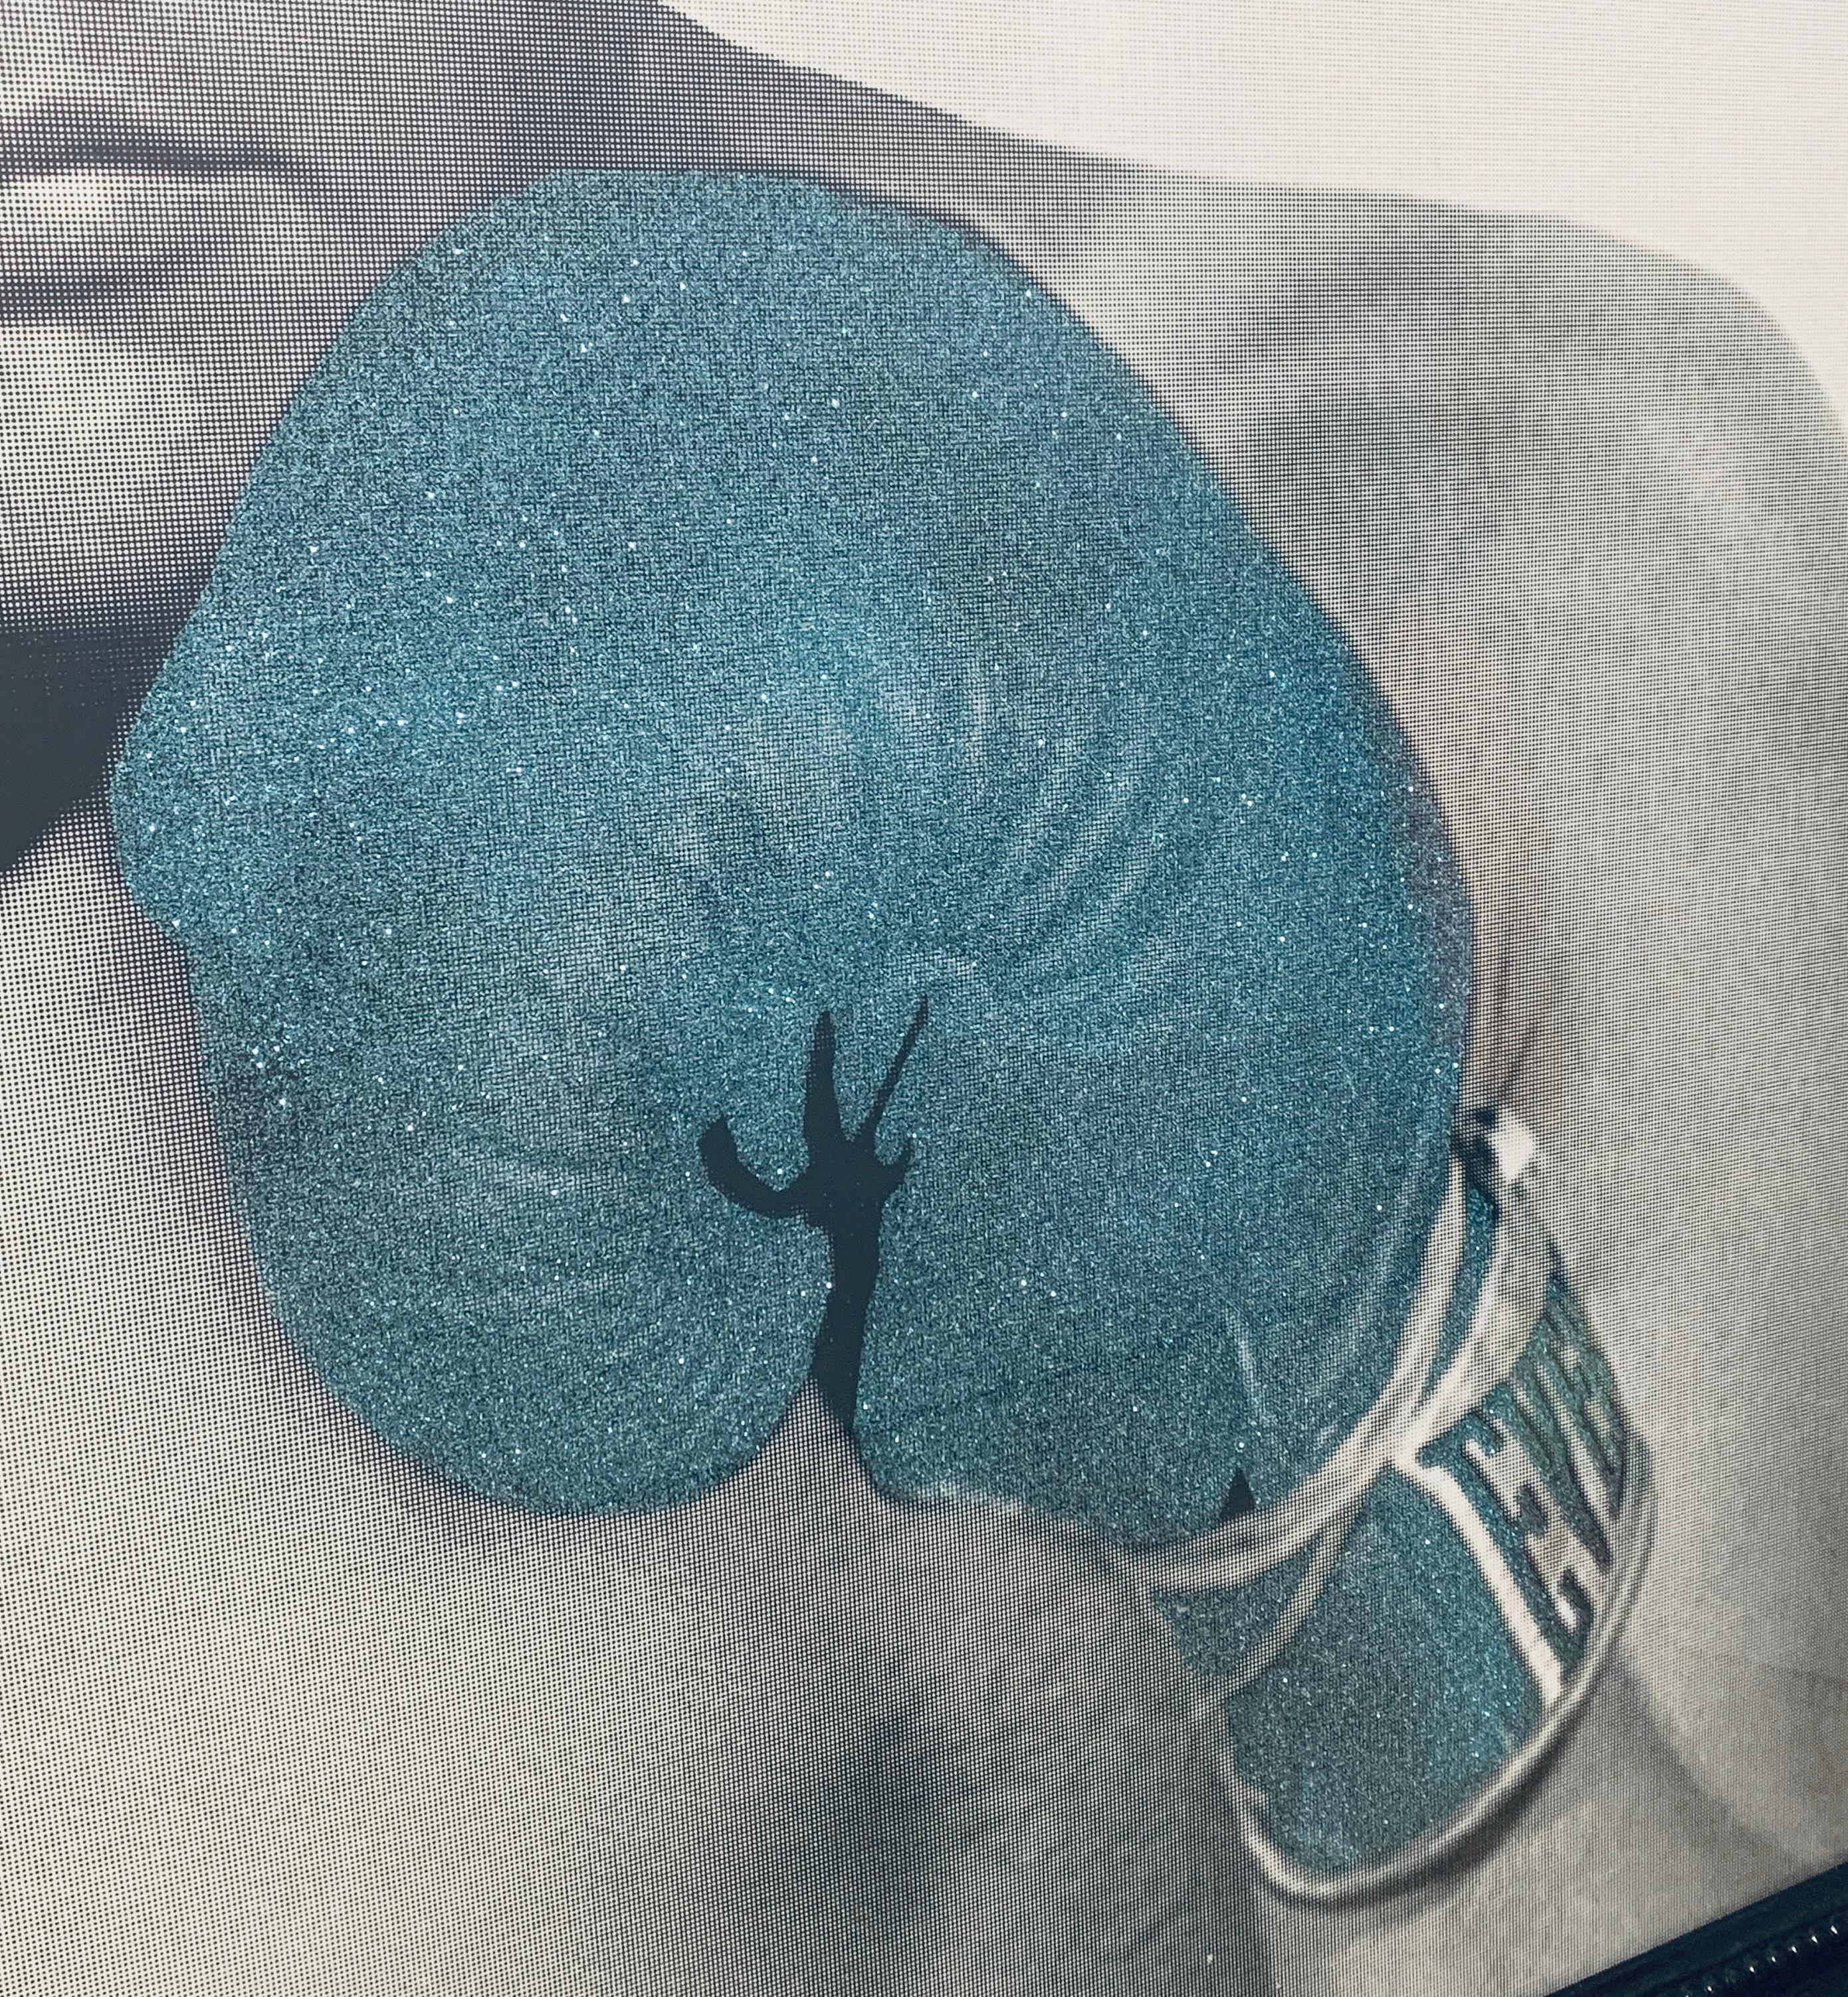 The Greatest Silver-Rainbow AP, Julian Prolman Elvis Mohammed Ali Boxing Glove For Sale 5